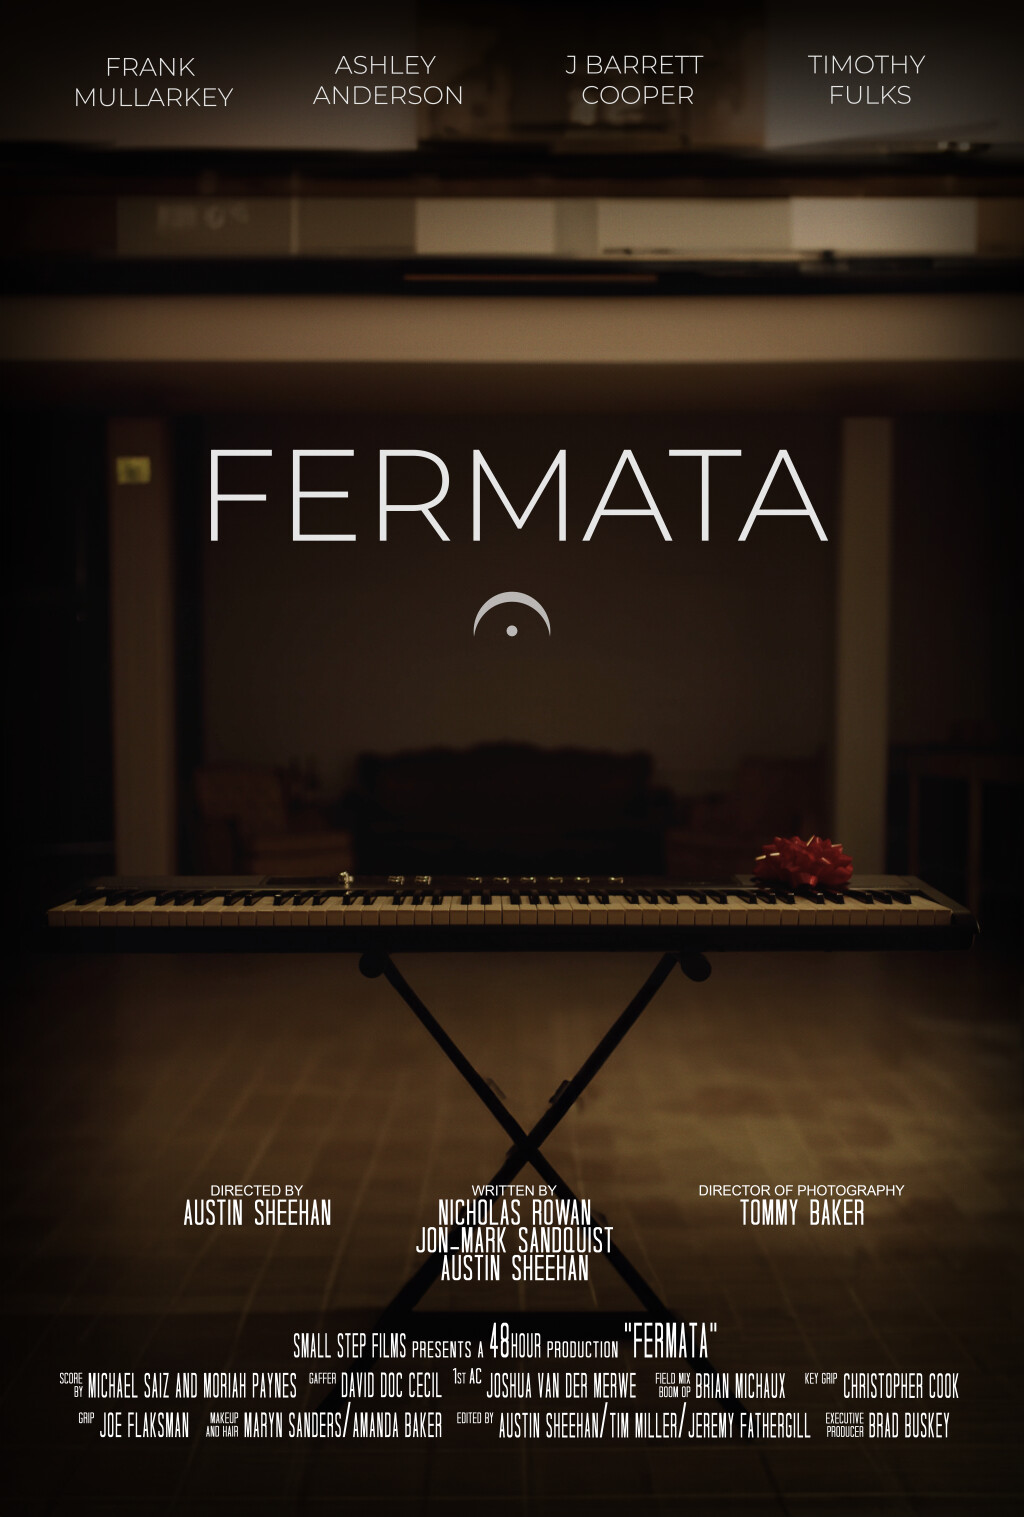 Filmposter for Fermata